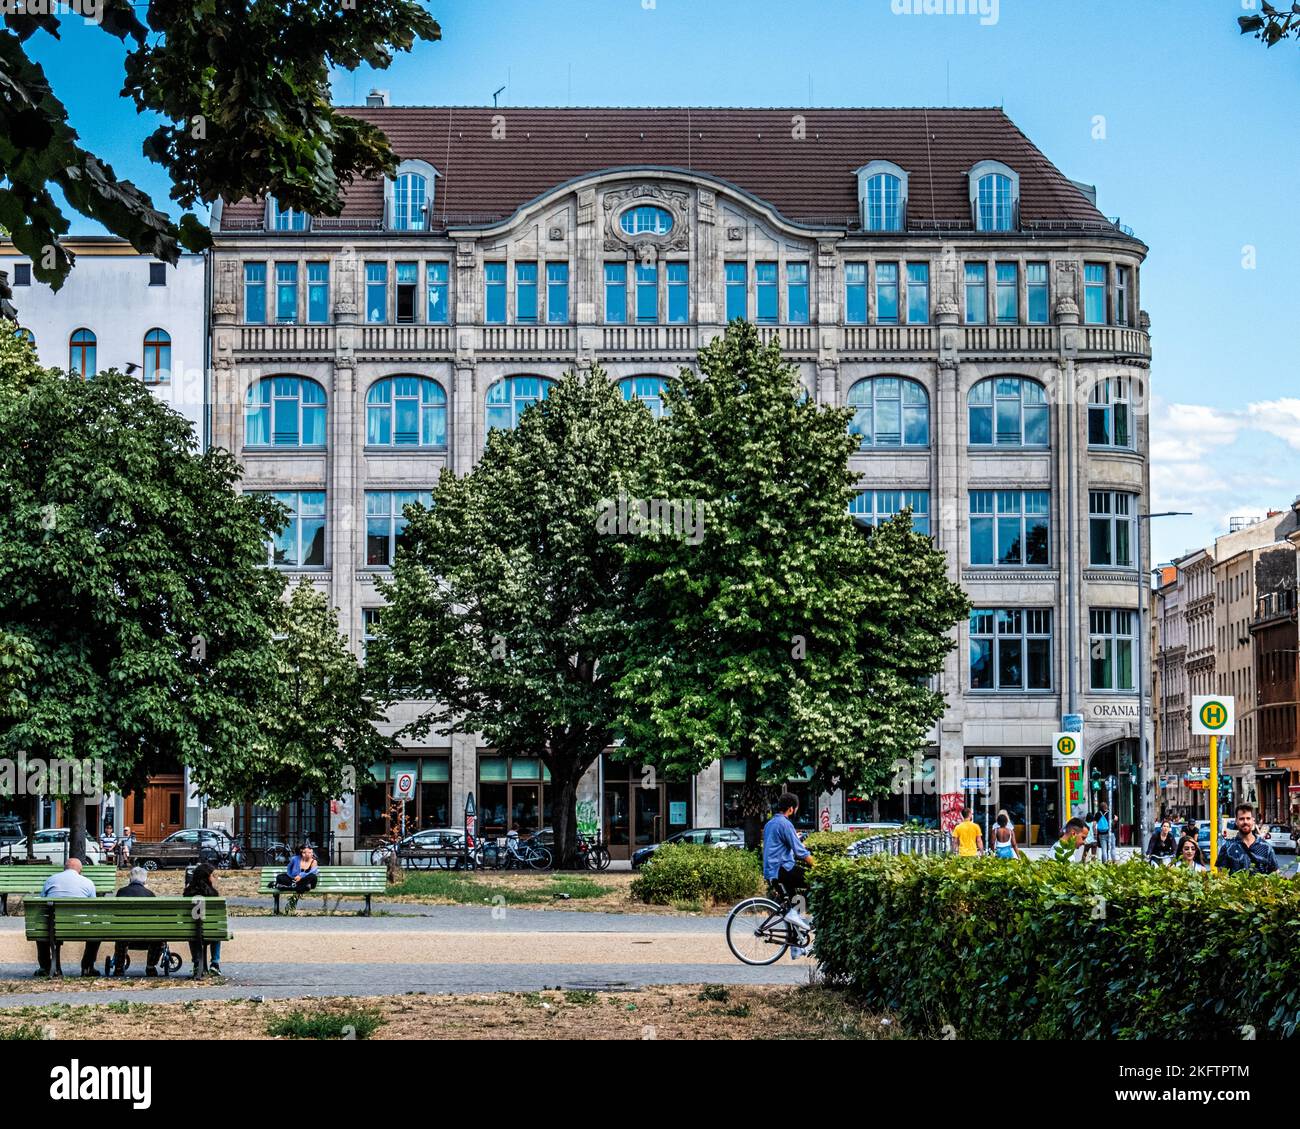 Bâtiment historique classé construit de 1912 à 1913, architecte Cremer & Wolffenstein, Oranienplatz 17, Kreuzberg, Berlin Banque D'Images